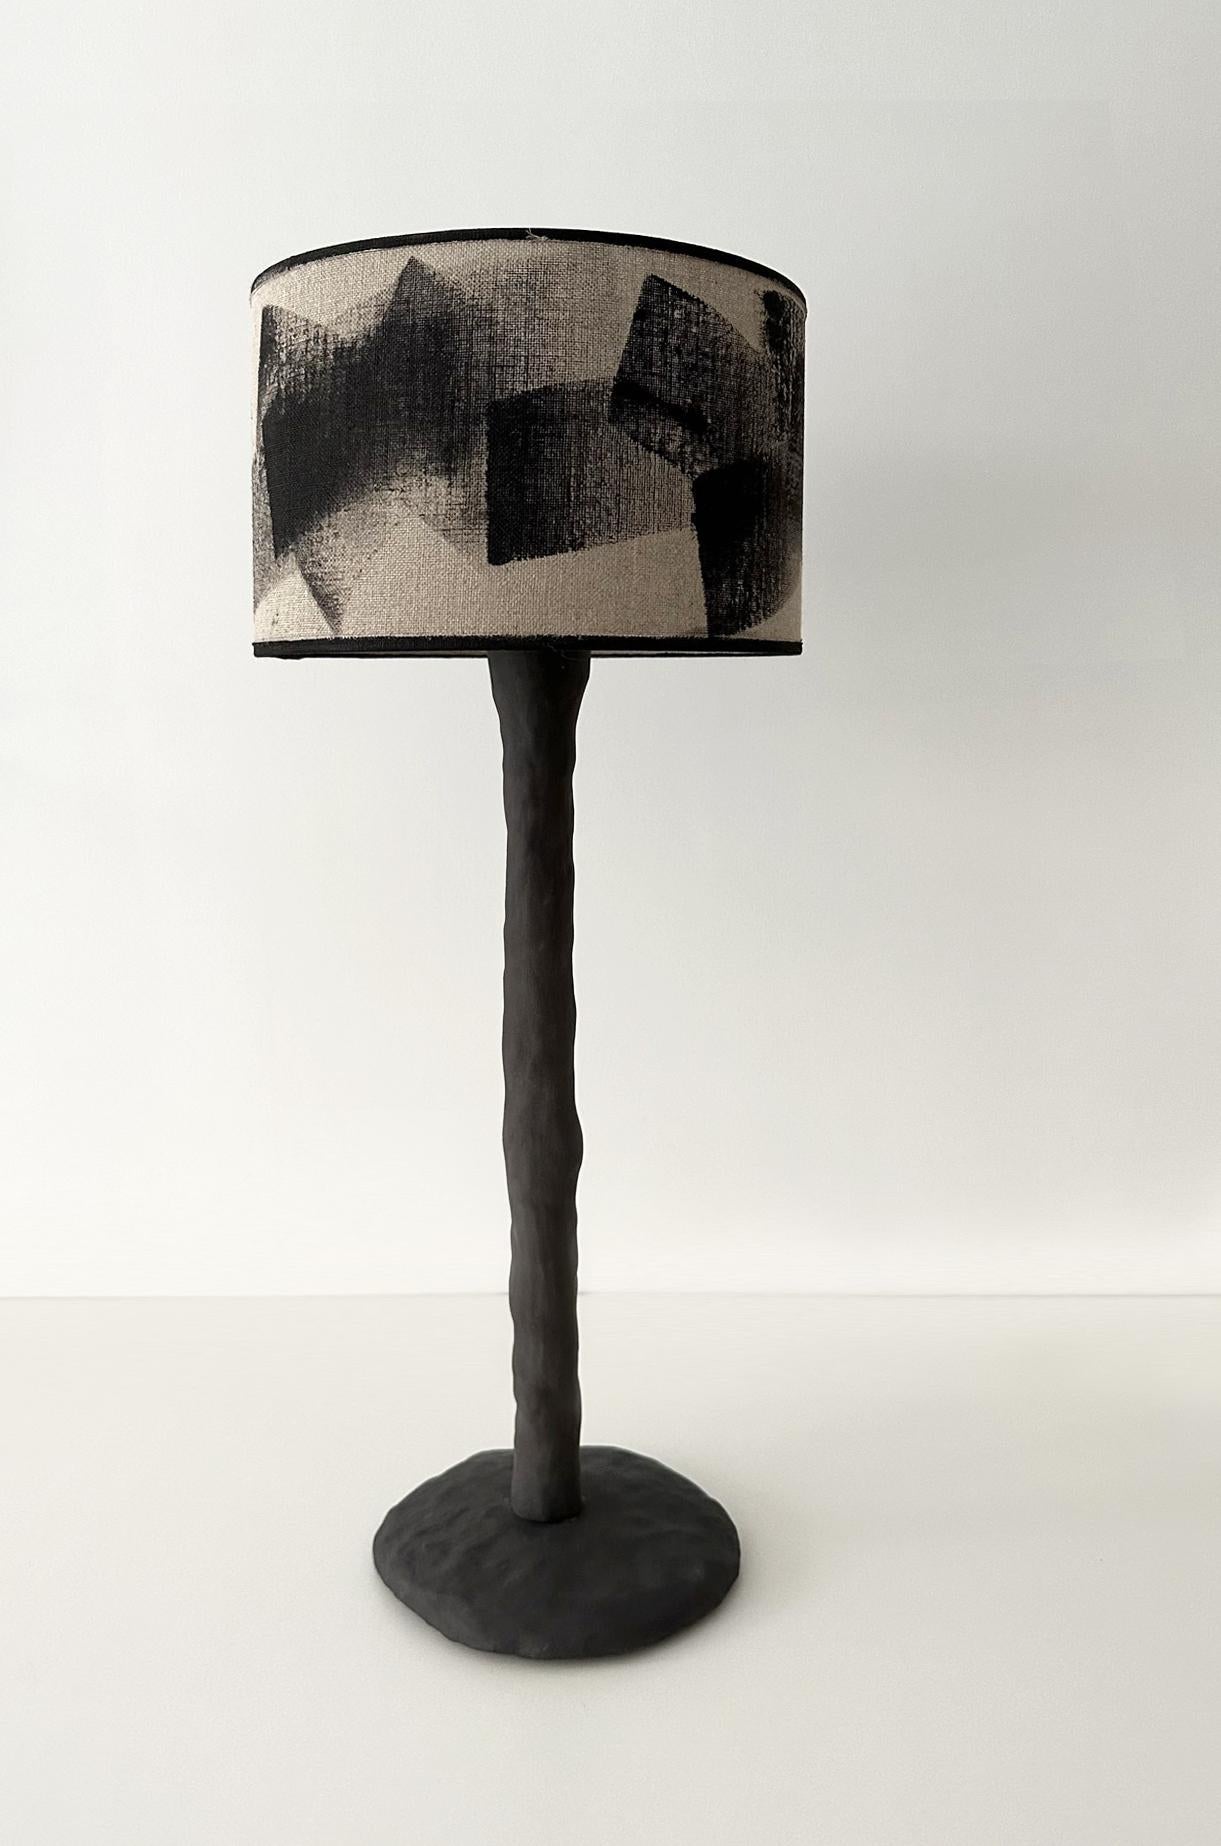 Lampe de table en bois abstrait par Atelier Monochrome
Exemplaire unique.
MATERIAL : Céramique / Grès.
Dimensions : D 17 x H 60 cm

Toutes nos lampes peuvent être câblées en fonction de chaque pays. Si elle est vendue aux États-Unis, elle sera